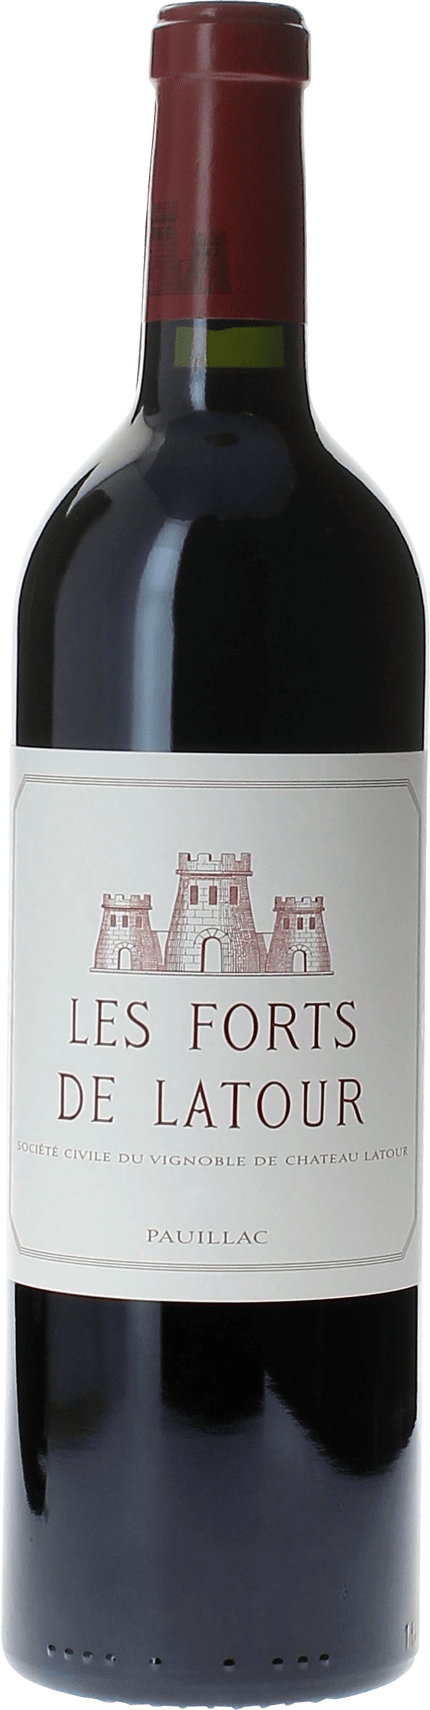 Les forts de latour 2006 2me vin de LATOUR Pauillac, Bordeaux rouge